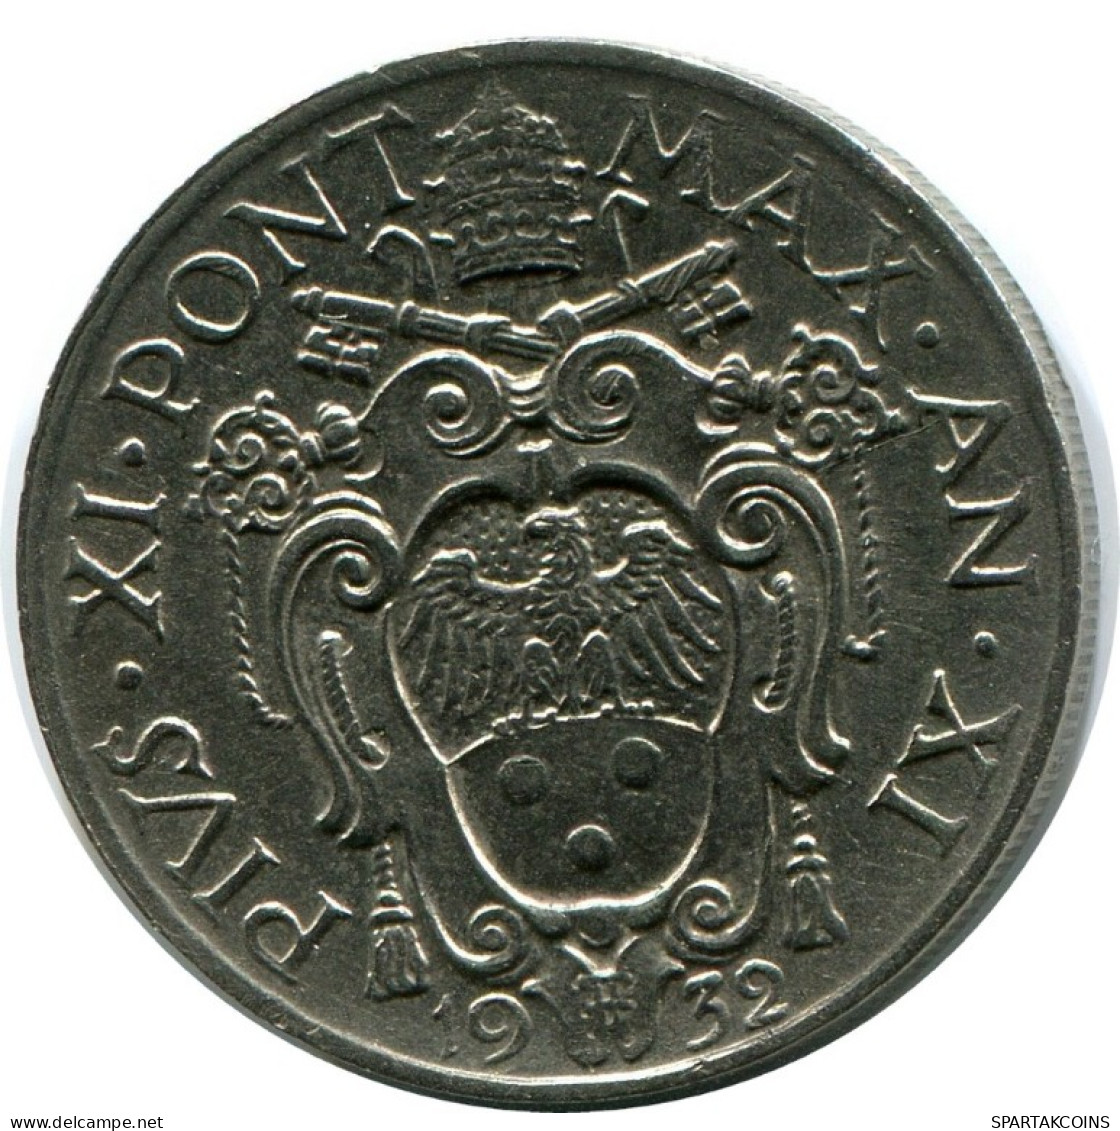 20 CENTESIMI 1932 VATICAN Coin Pius XI (1922-1939) #AH343.16.U.A - Vatikan